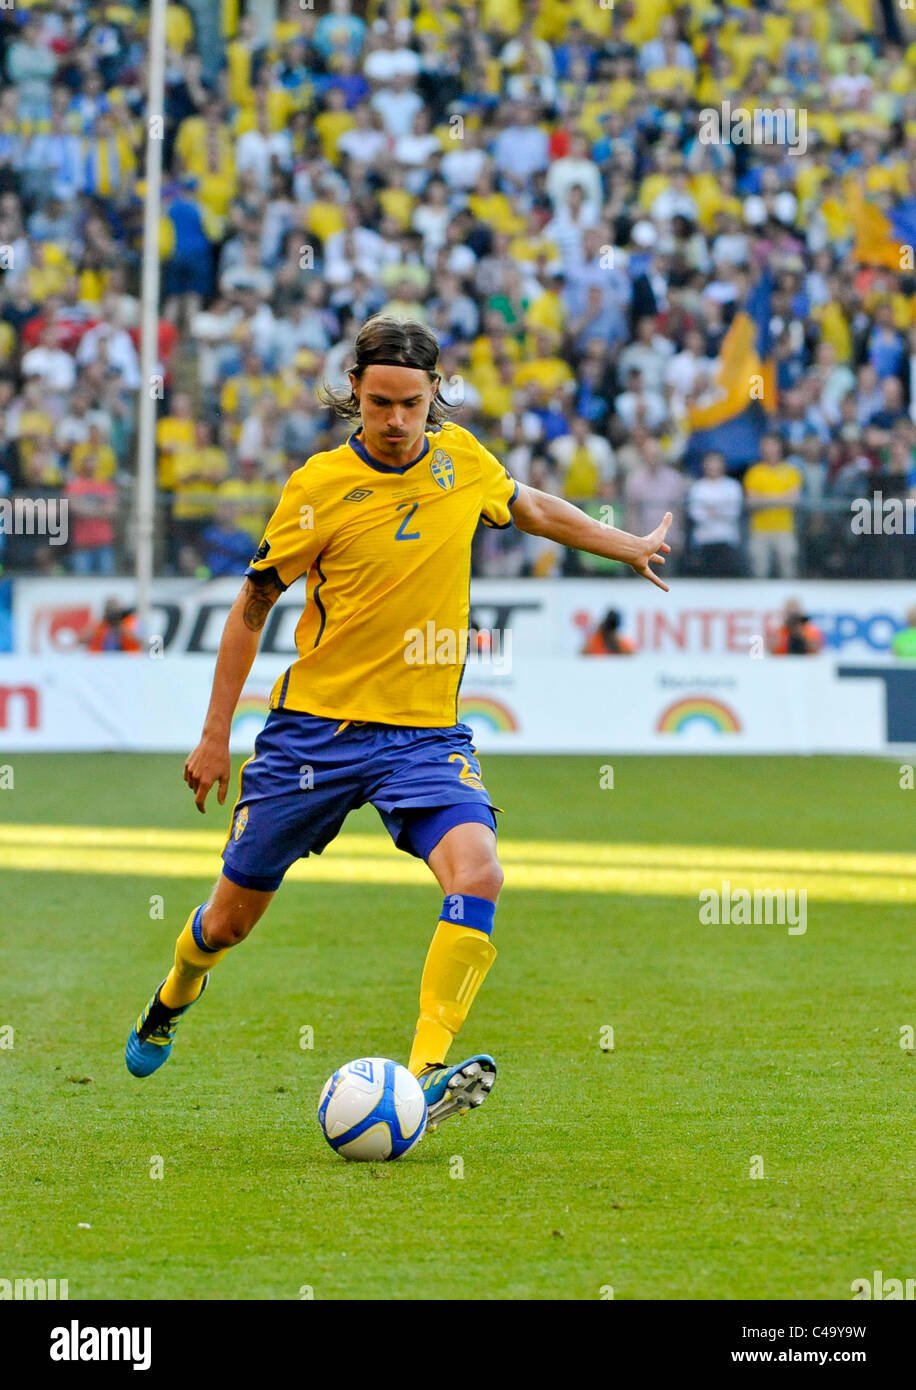 Partita internazionale di calcio Svezia vs Finlandia Mikael Lustig SWE con la palla Foto Stock